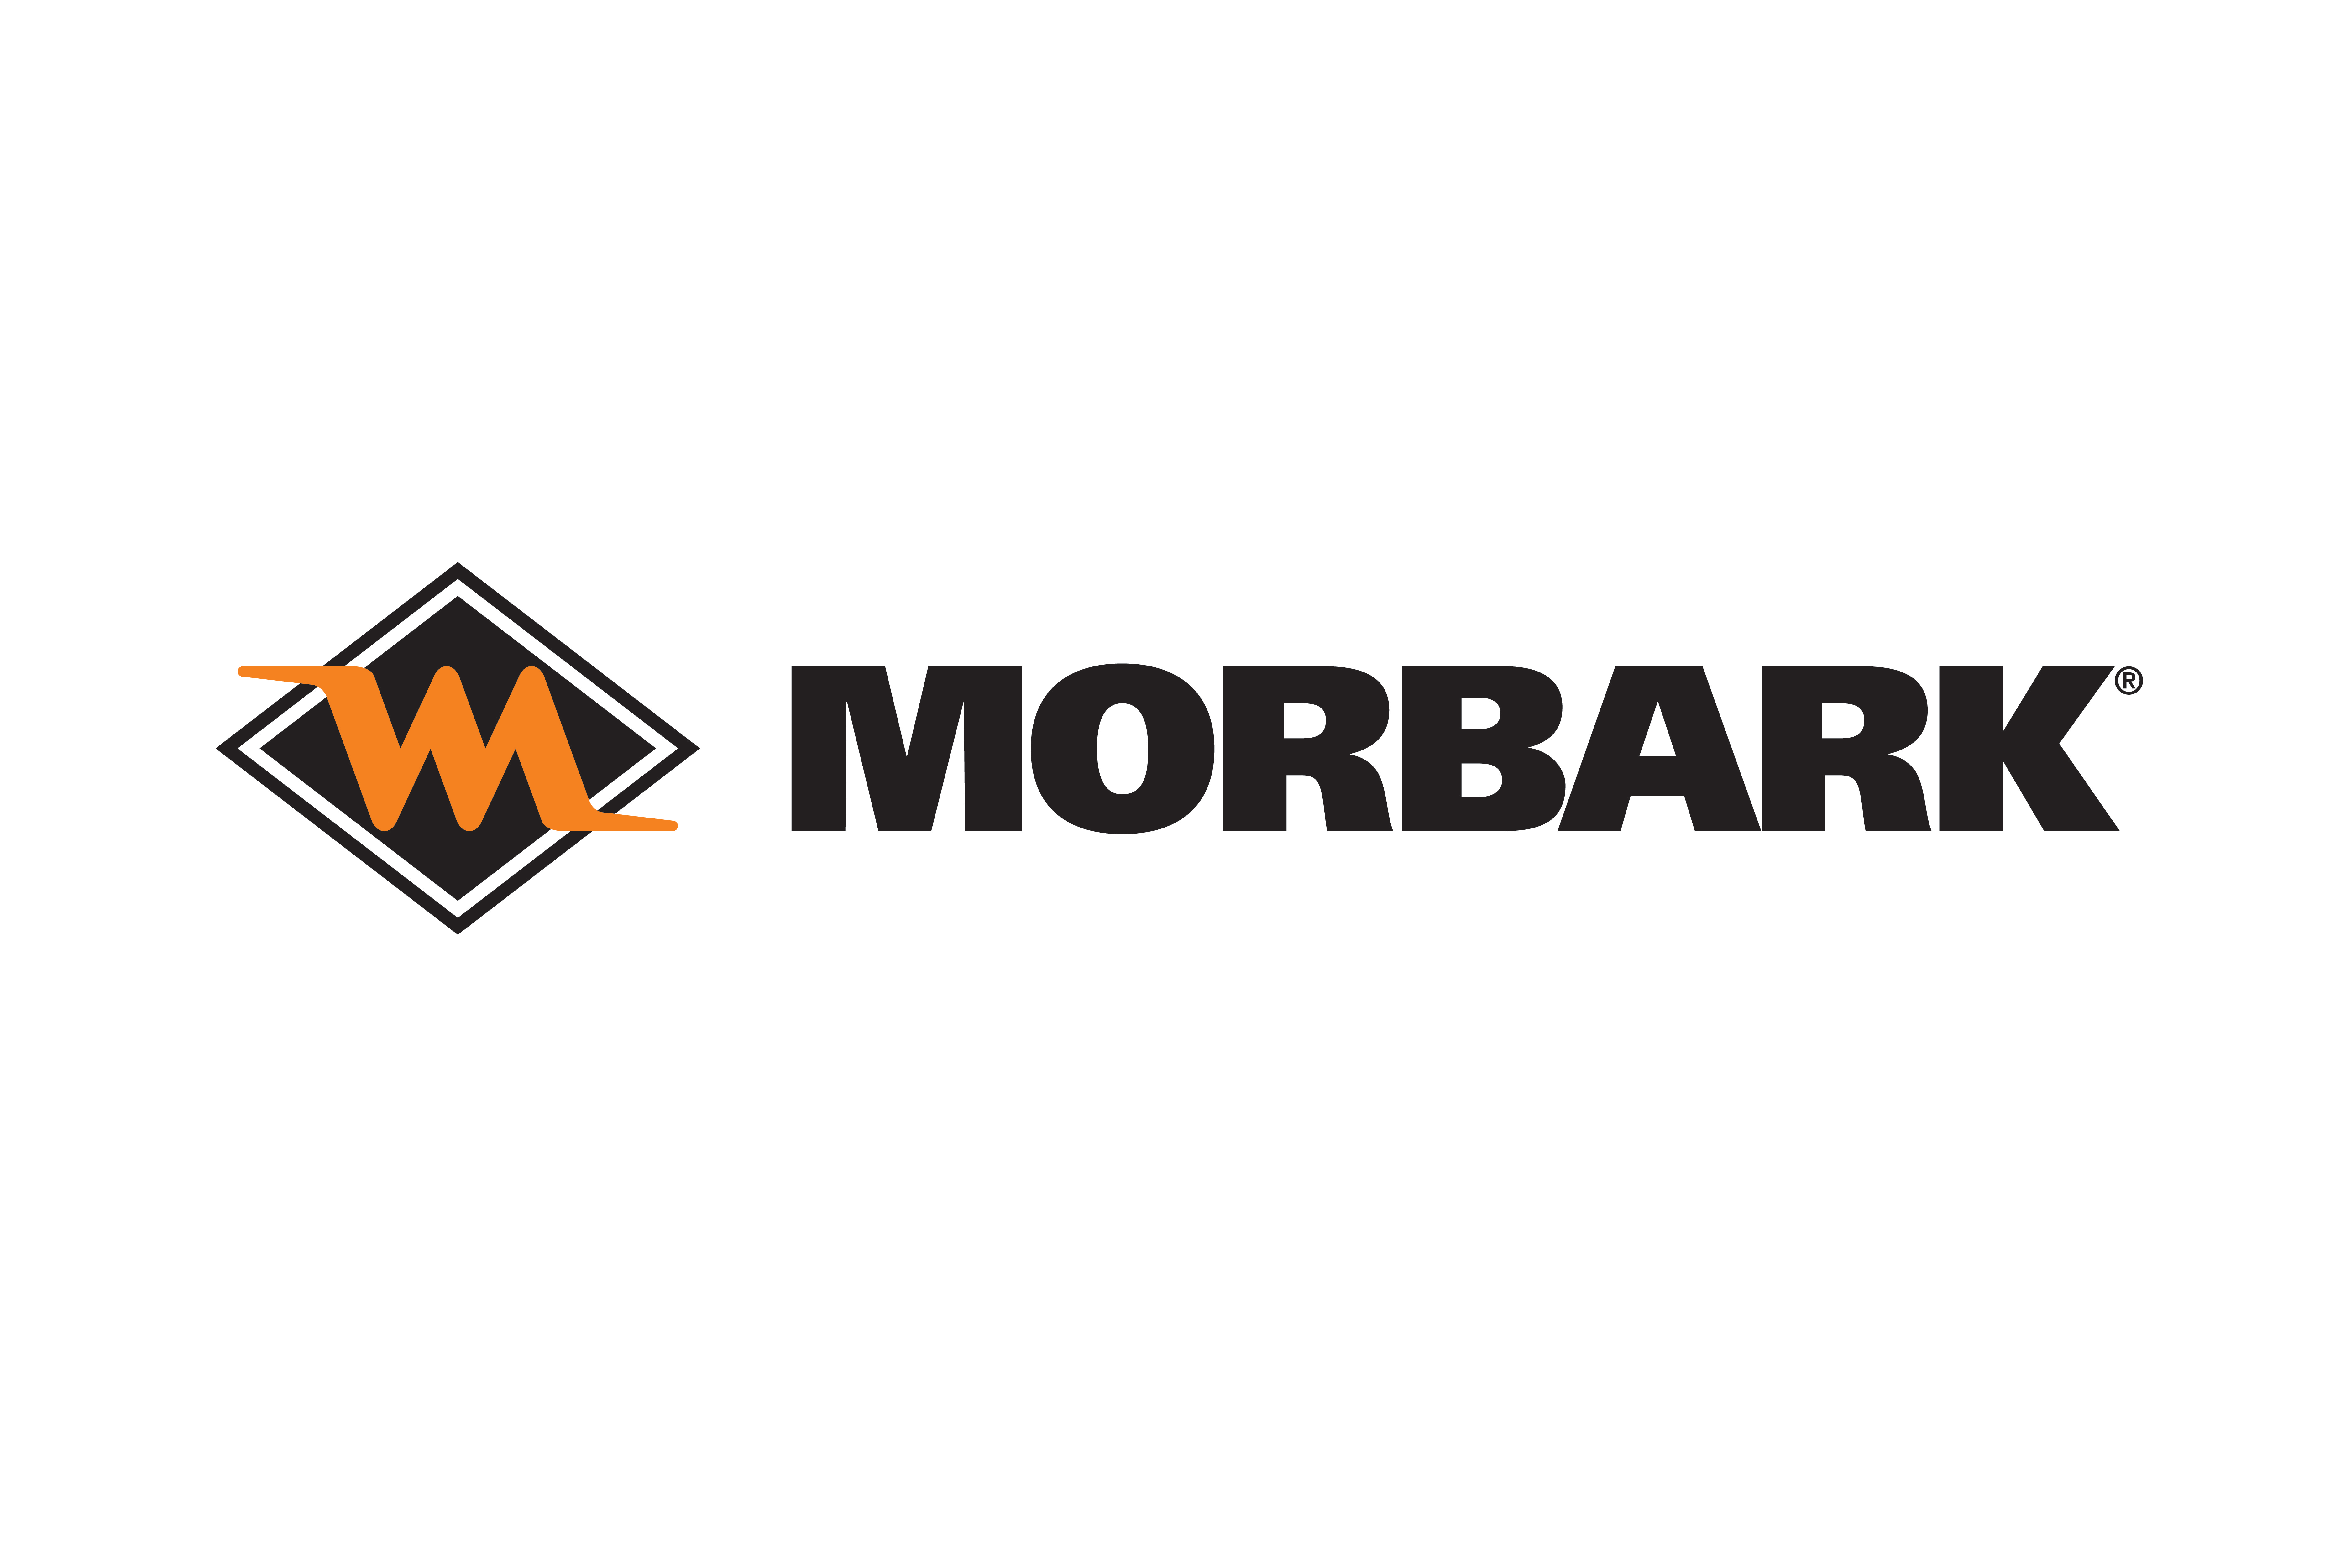 Morbark